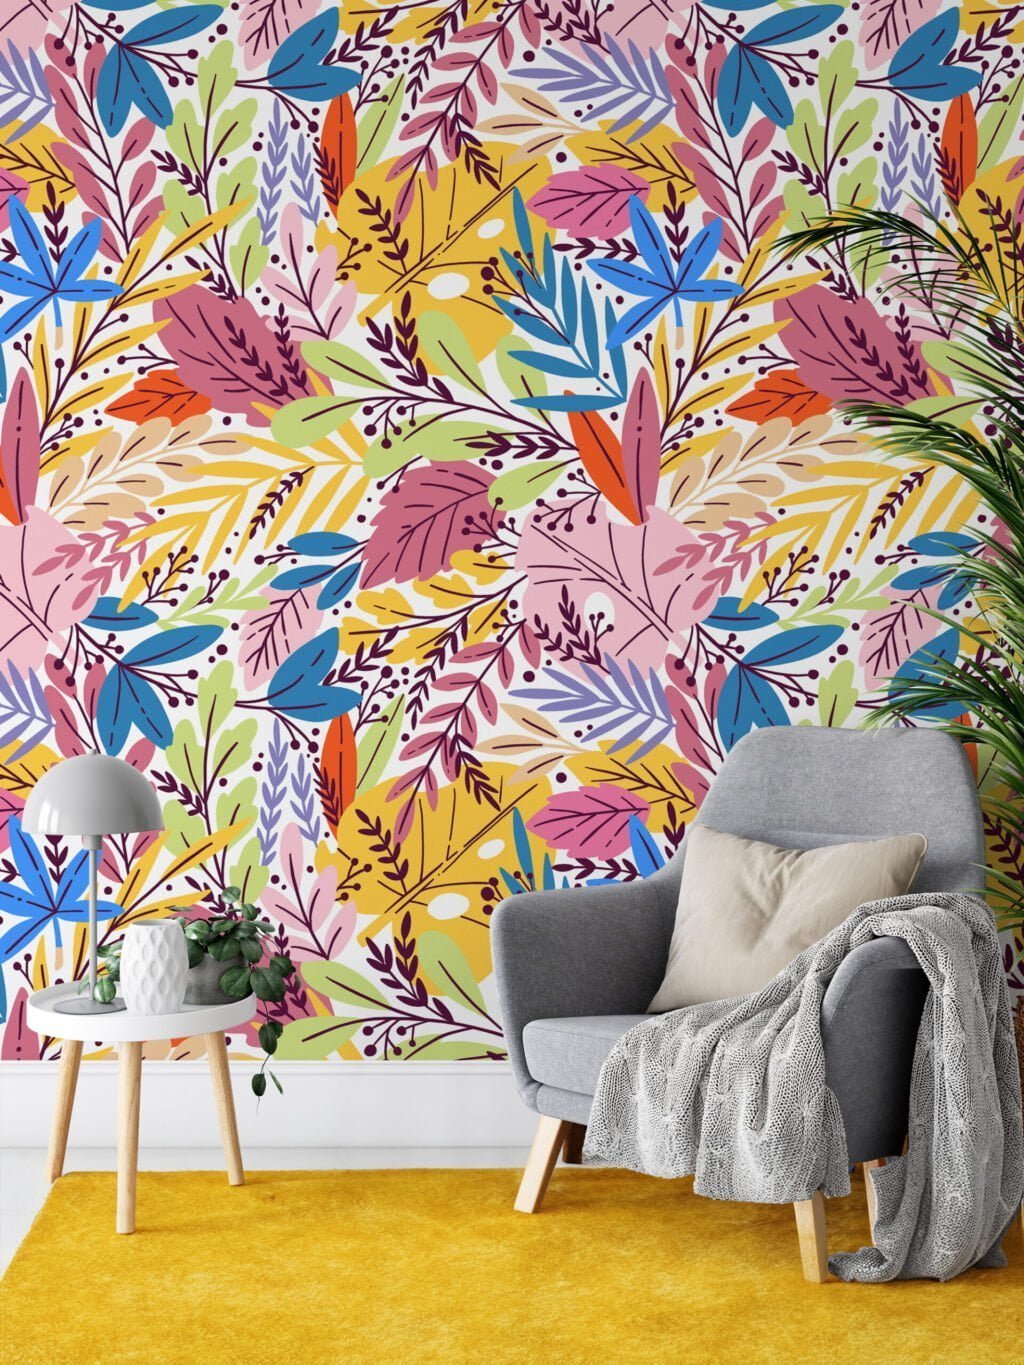 Renkli Yapraklar Duvar Kağıdı, Rengarenk Yaprak Desenli 3D Duvar Kağıdı Çiçekli Duvar Kağıtları 2